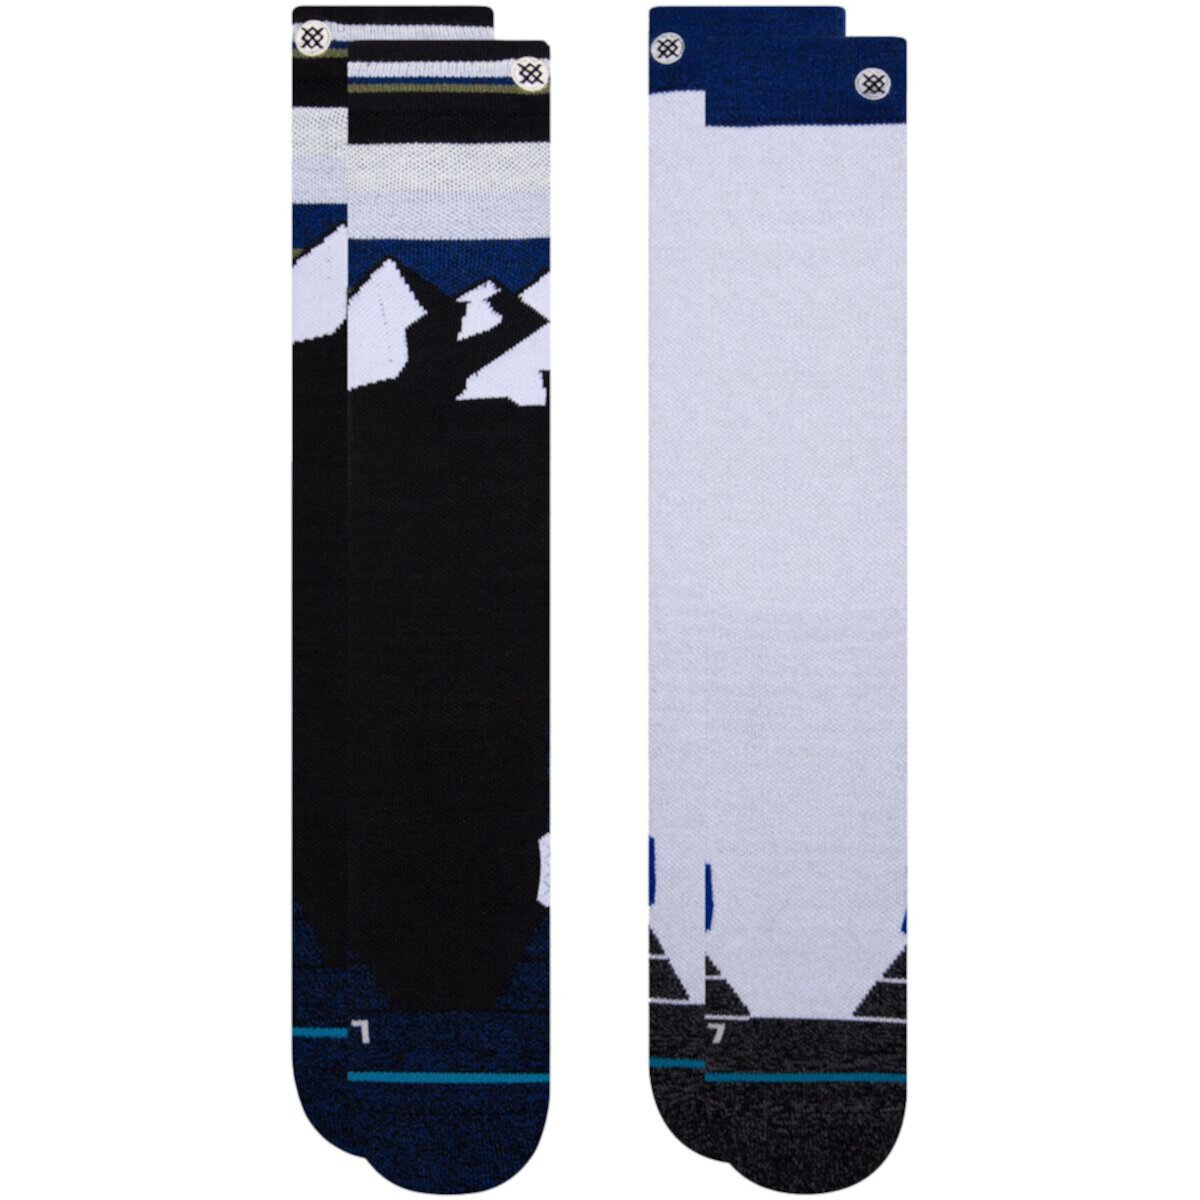 Носки для беговых лыж - 2 шт. В упаковке Stance